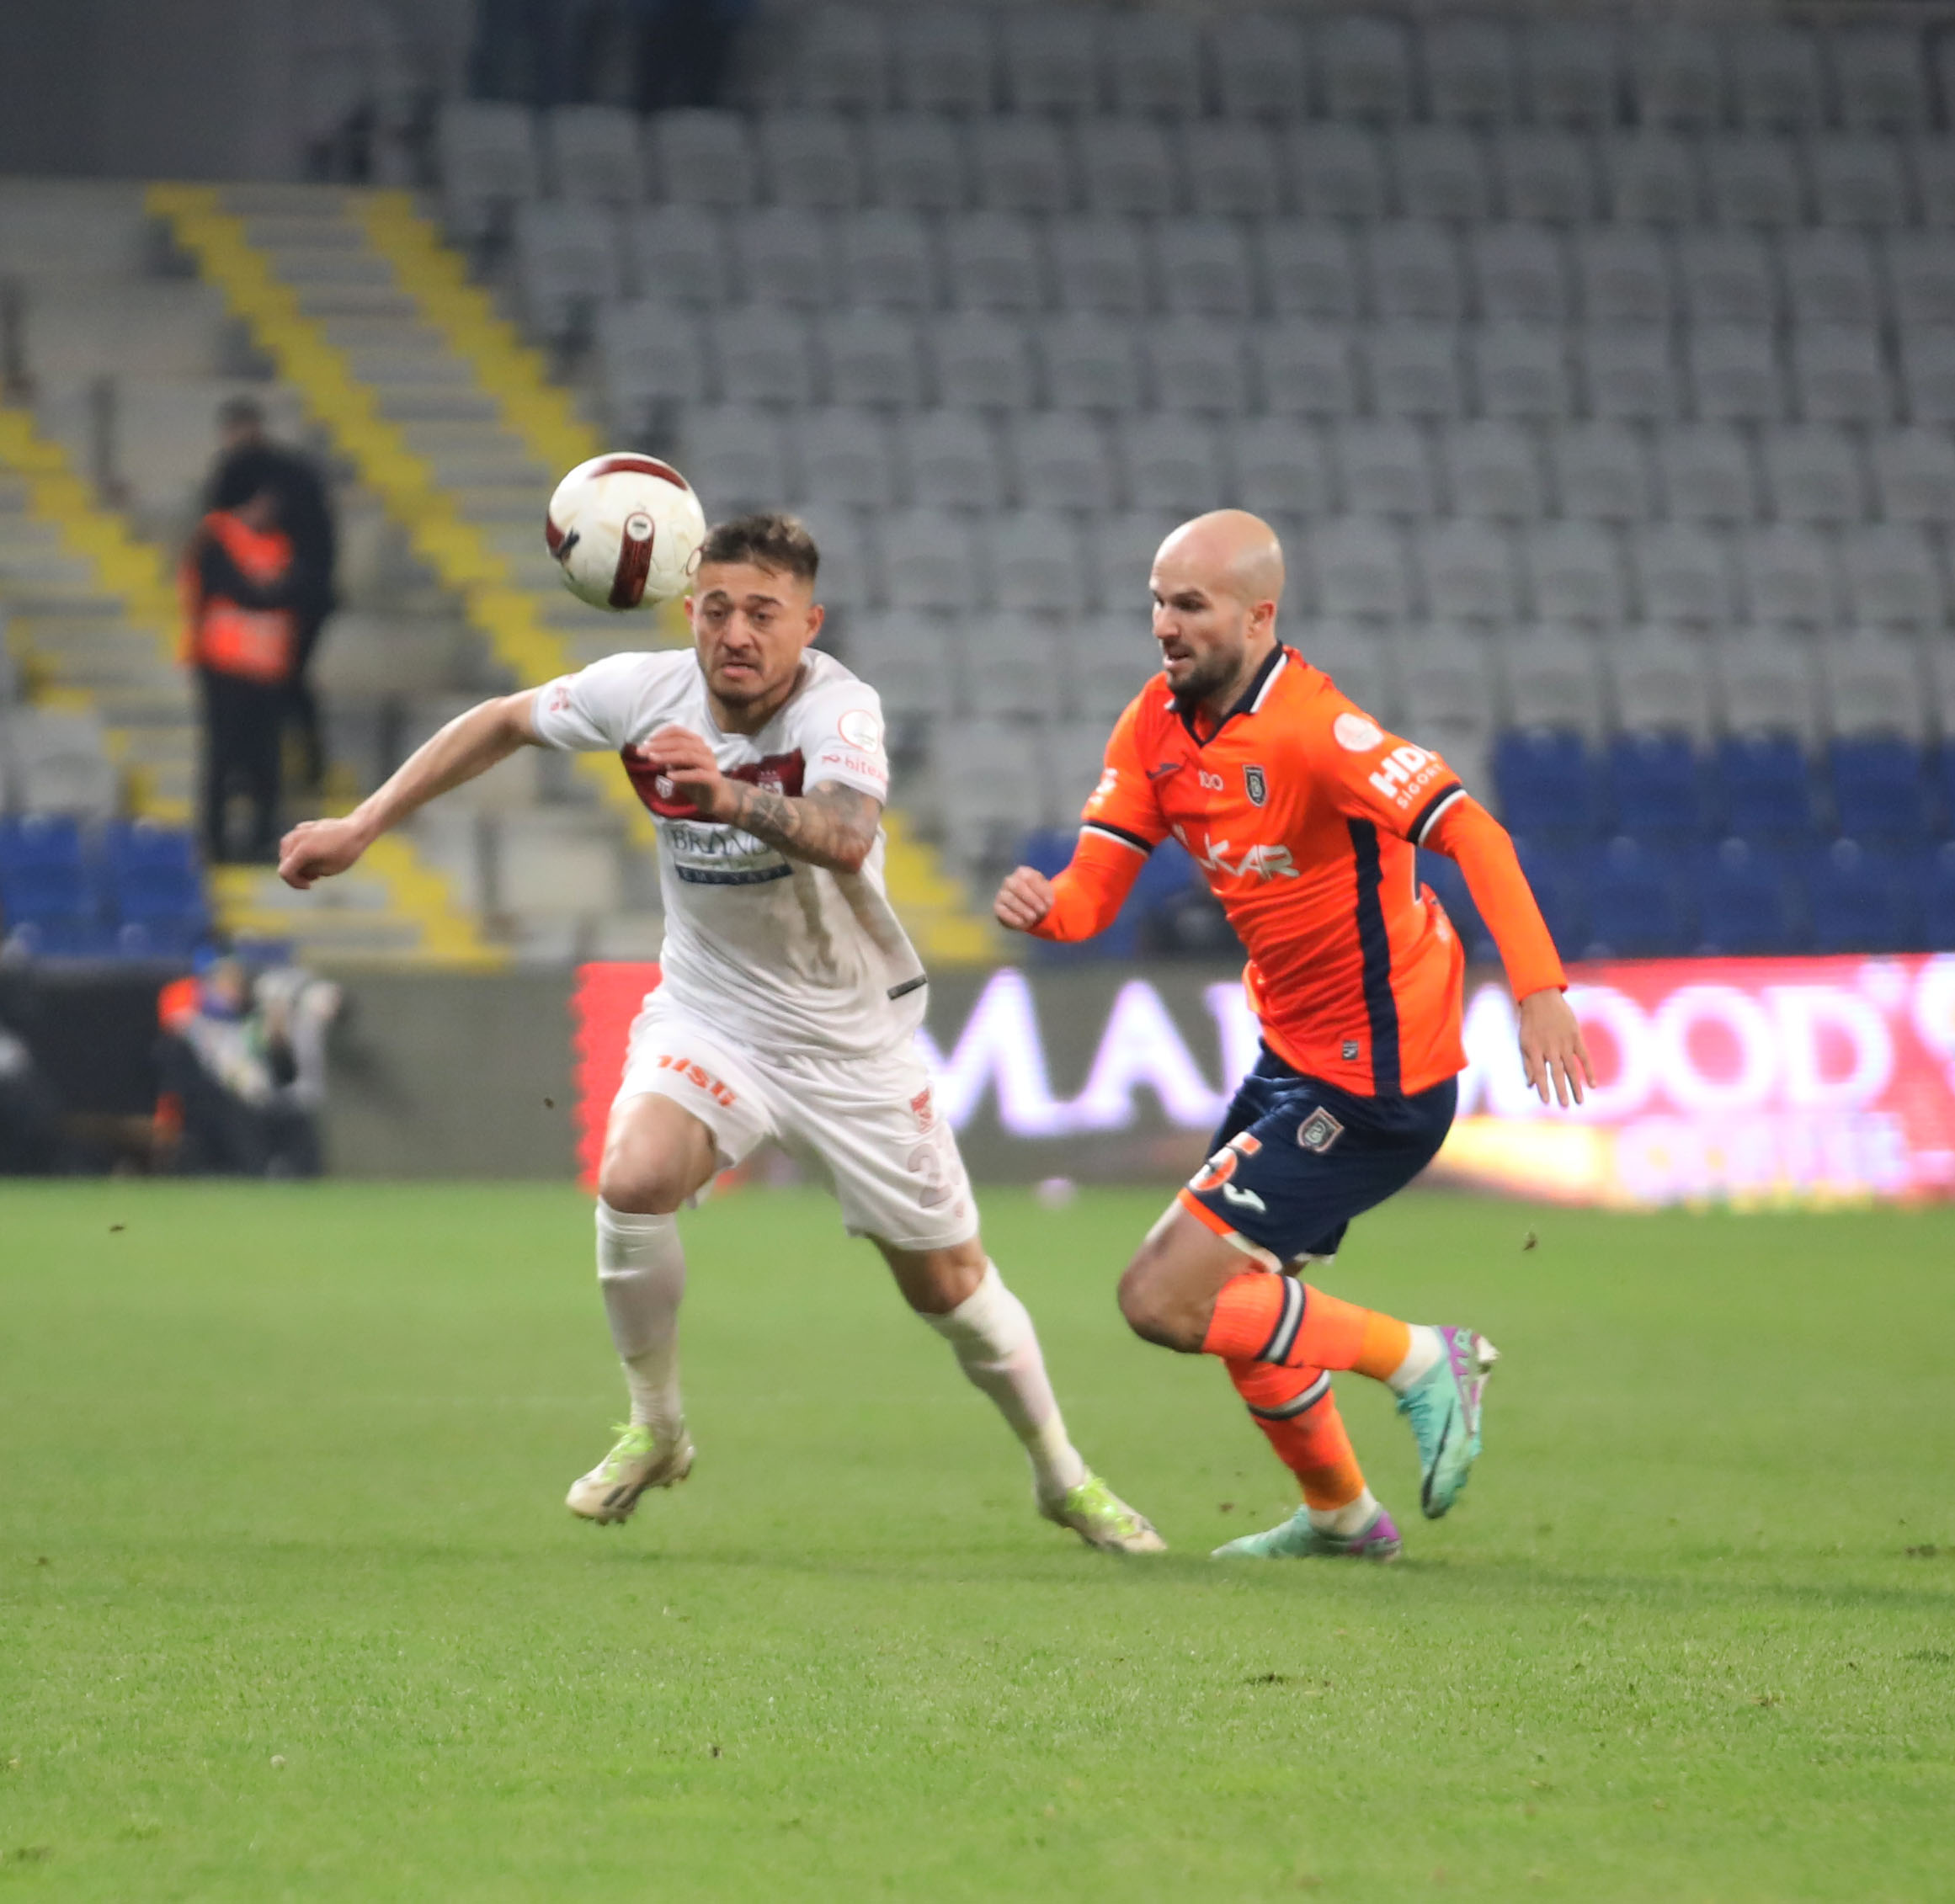 Rams Başakşehir 3-1 EMS Yapı Sivasspor